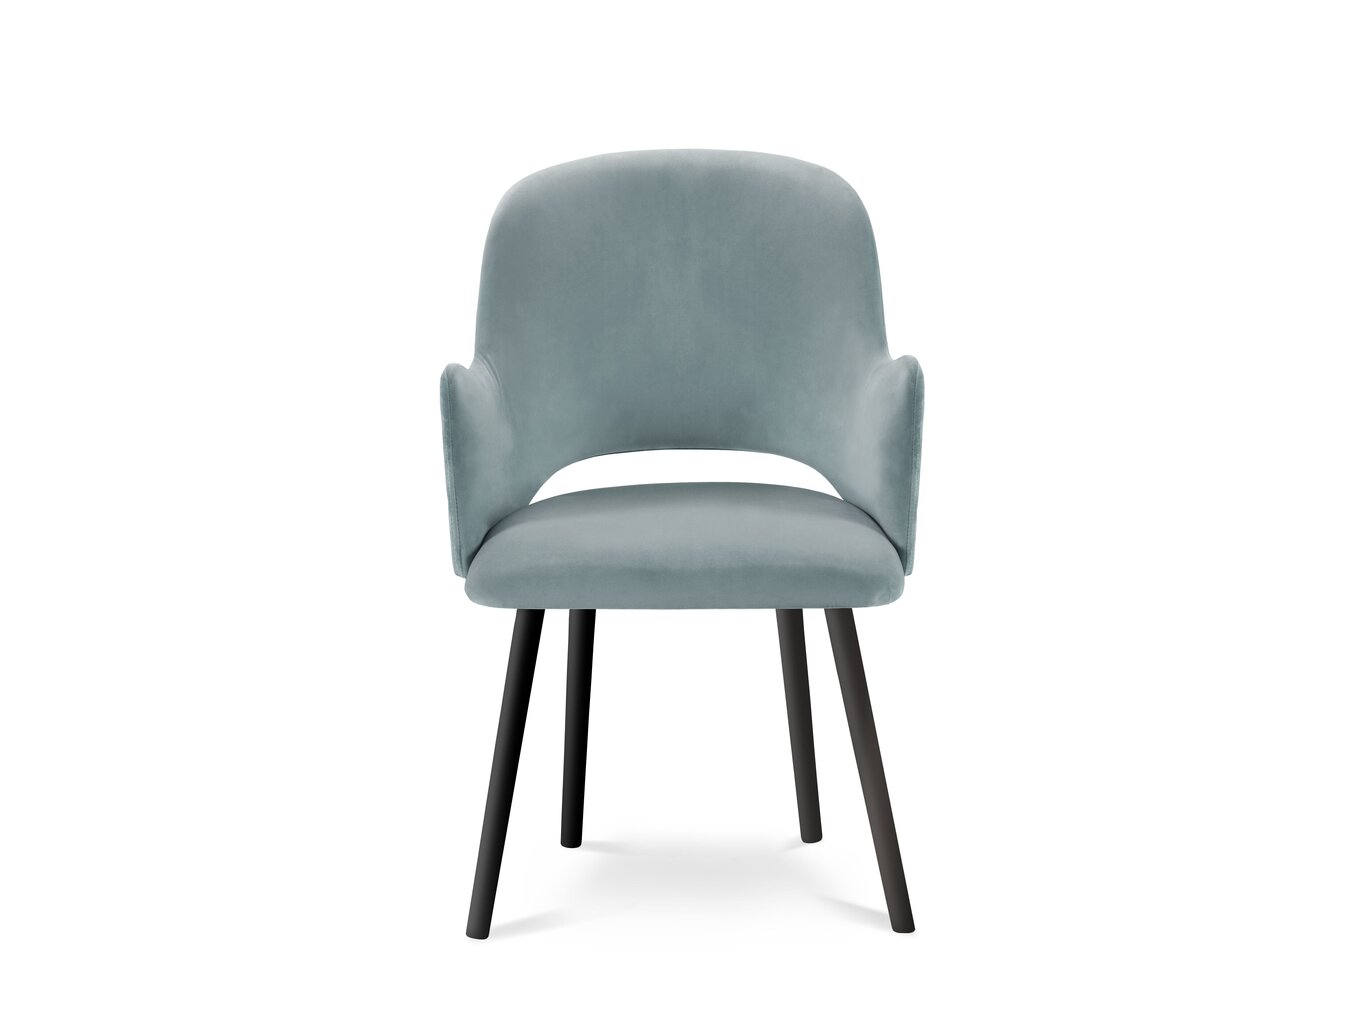 4-ių kėdžių komplektas Milo Casa Laelia, šviesiai mėlynas цена и информация | Virtuvės ir valgomojo kėdės | pigu.lt